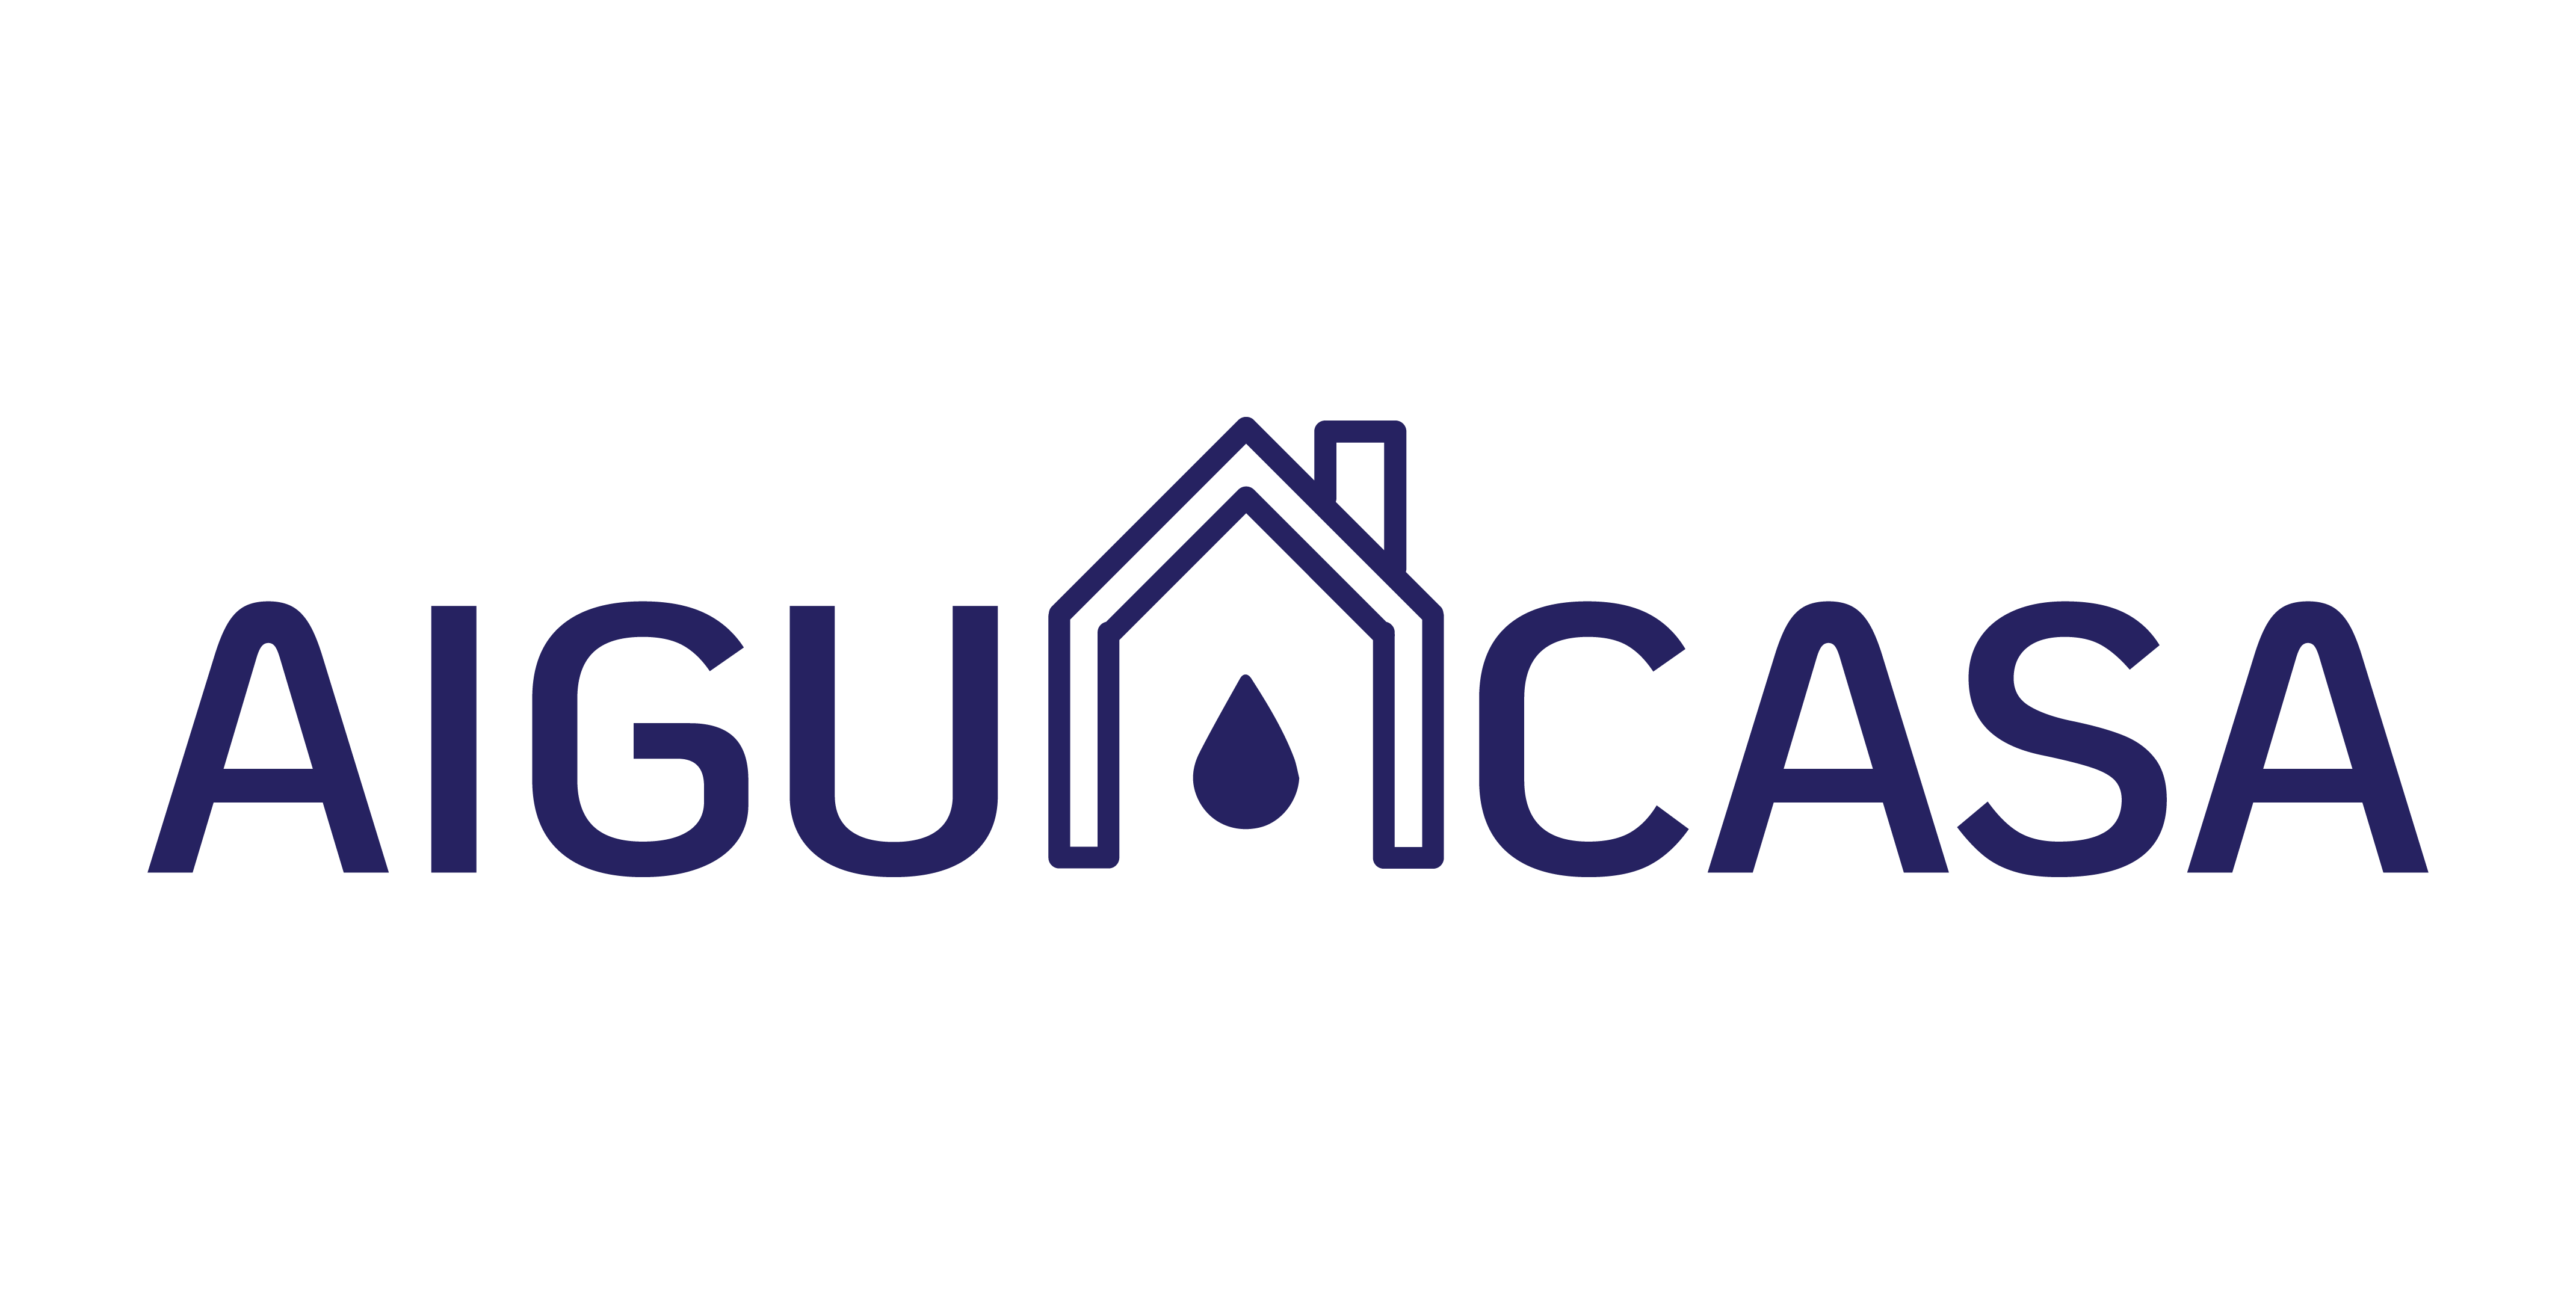 AiguaCasa Logotipo